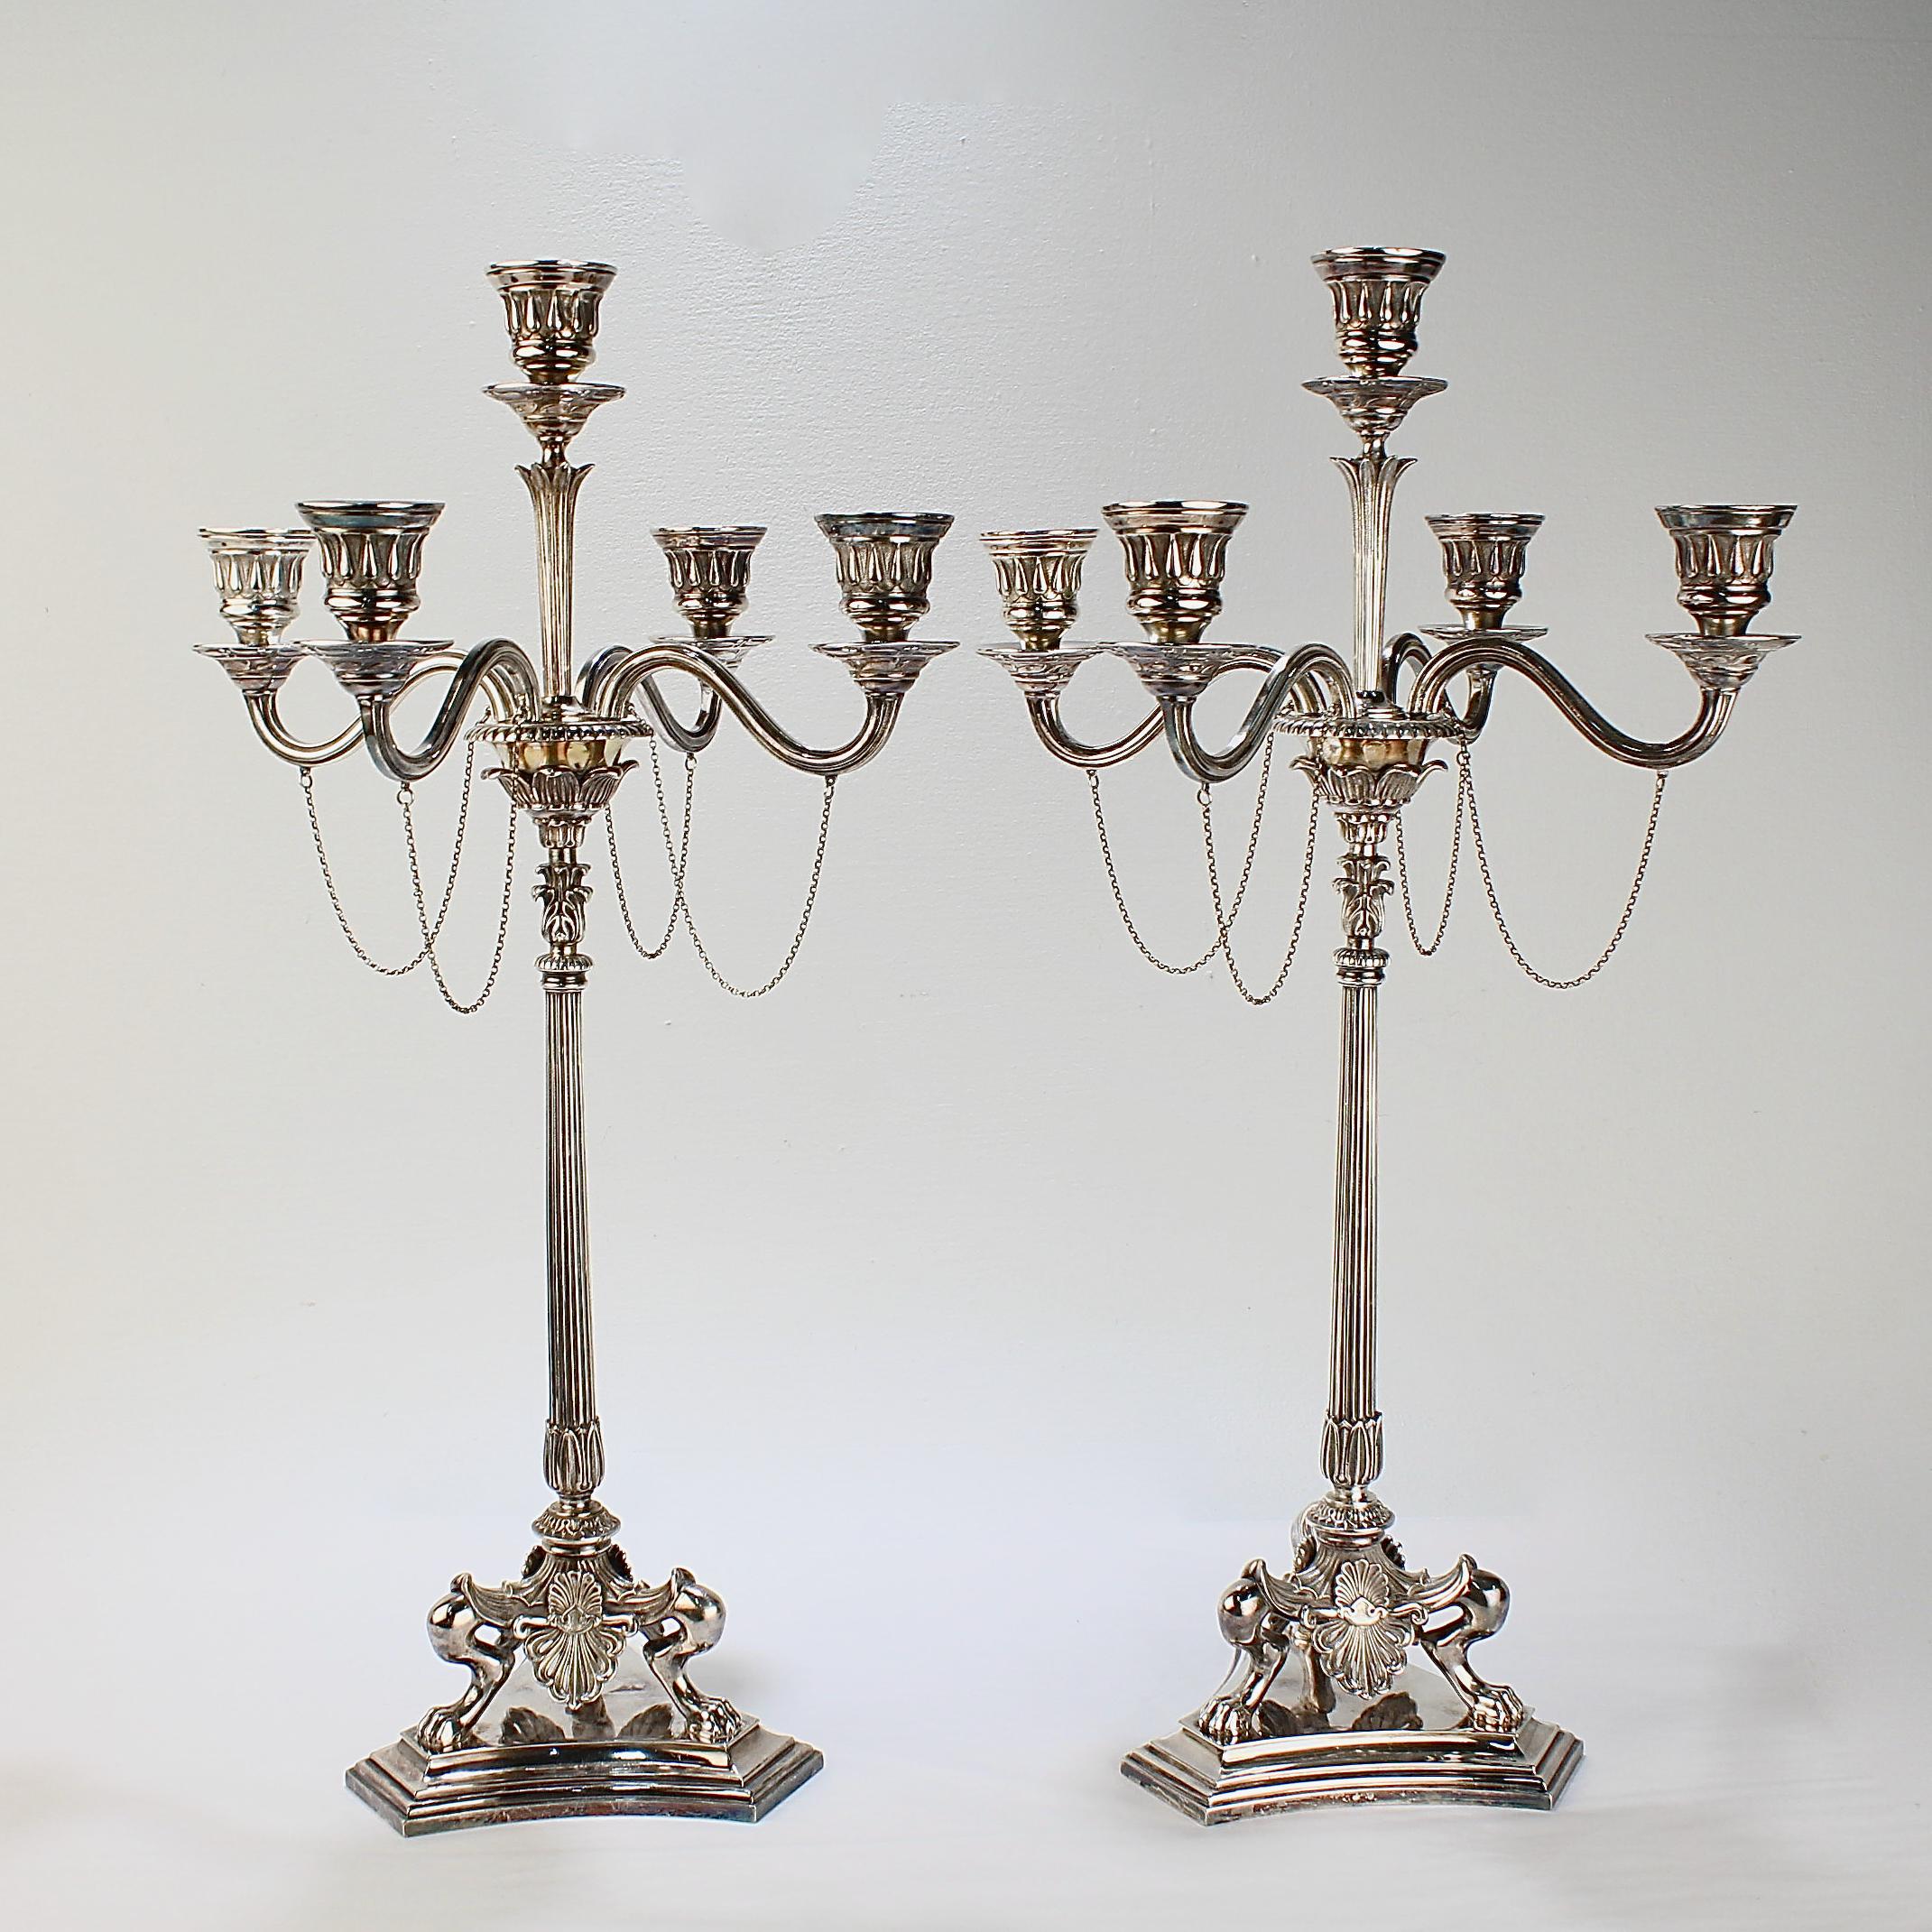 Une rare paire de candélabres victoriens néoclassiques plaqués argent par Elkington & Co.

Chaque candélabre possède une colonne cannelée qui repose sur trois pieds en forme de pattes qui supportent également des tabliers en forme d'anthemion. Les